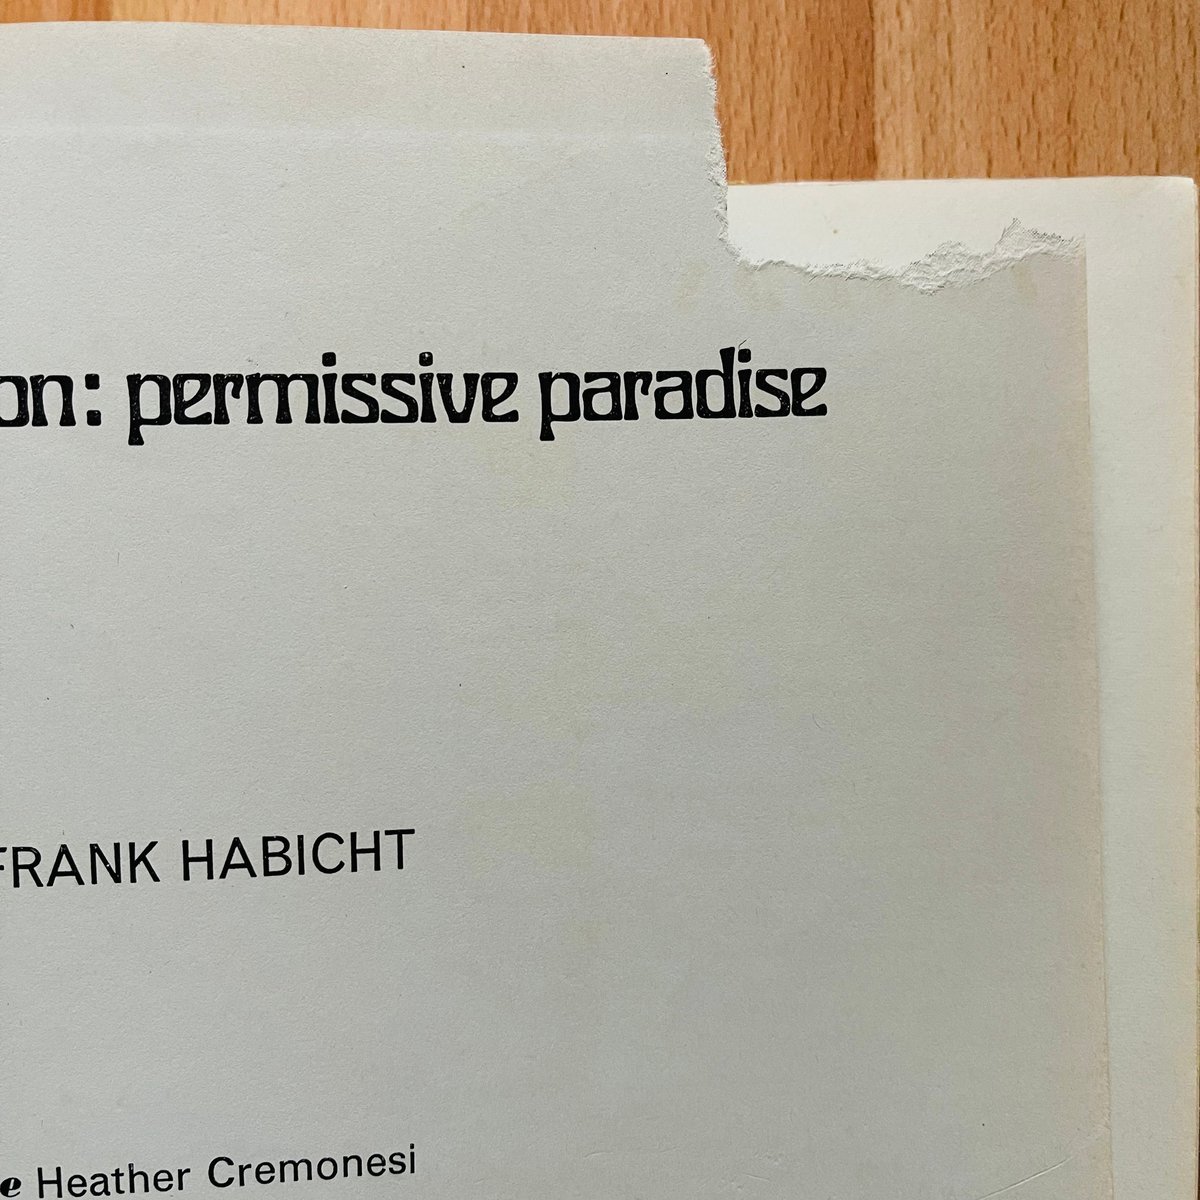 MODEST) BOOKS — (Frank Habicht) (Young London Permissive Paradise)